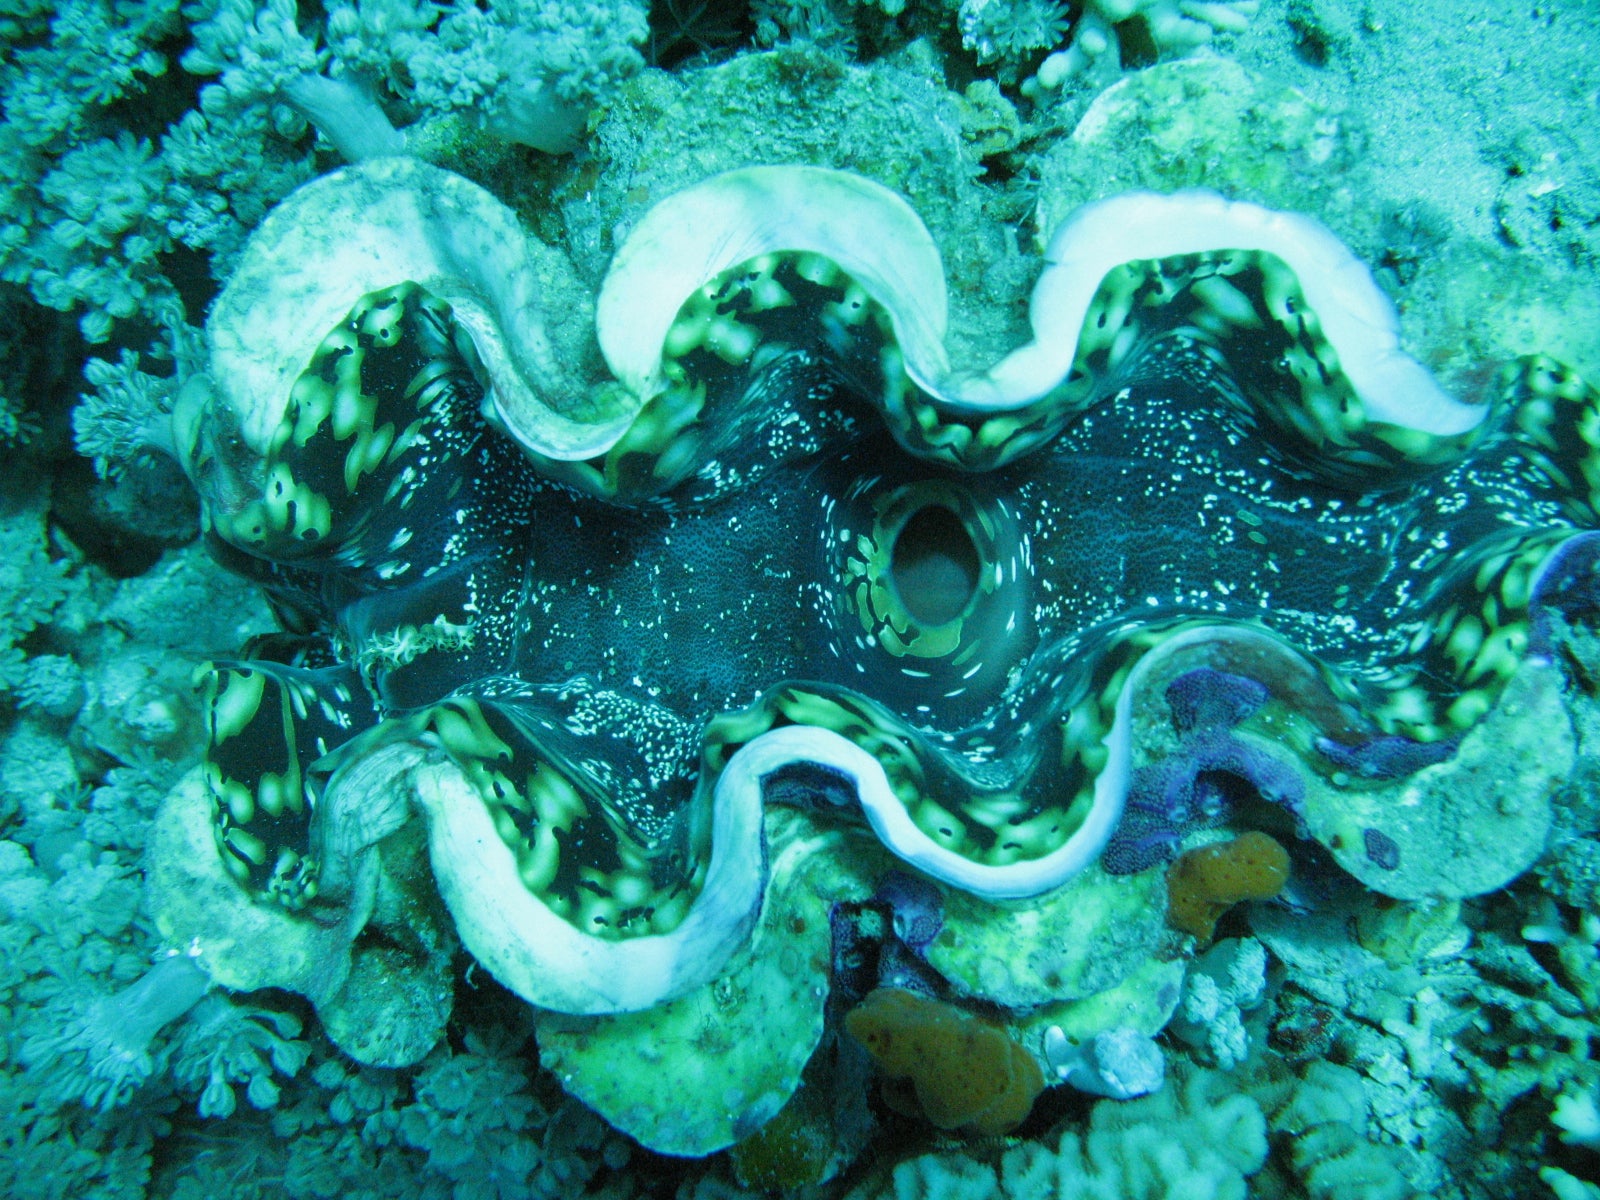 Giant clam (Tridacna squamosa)